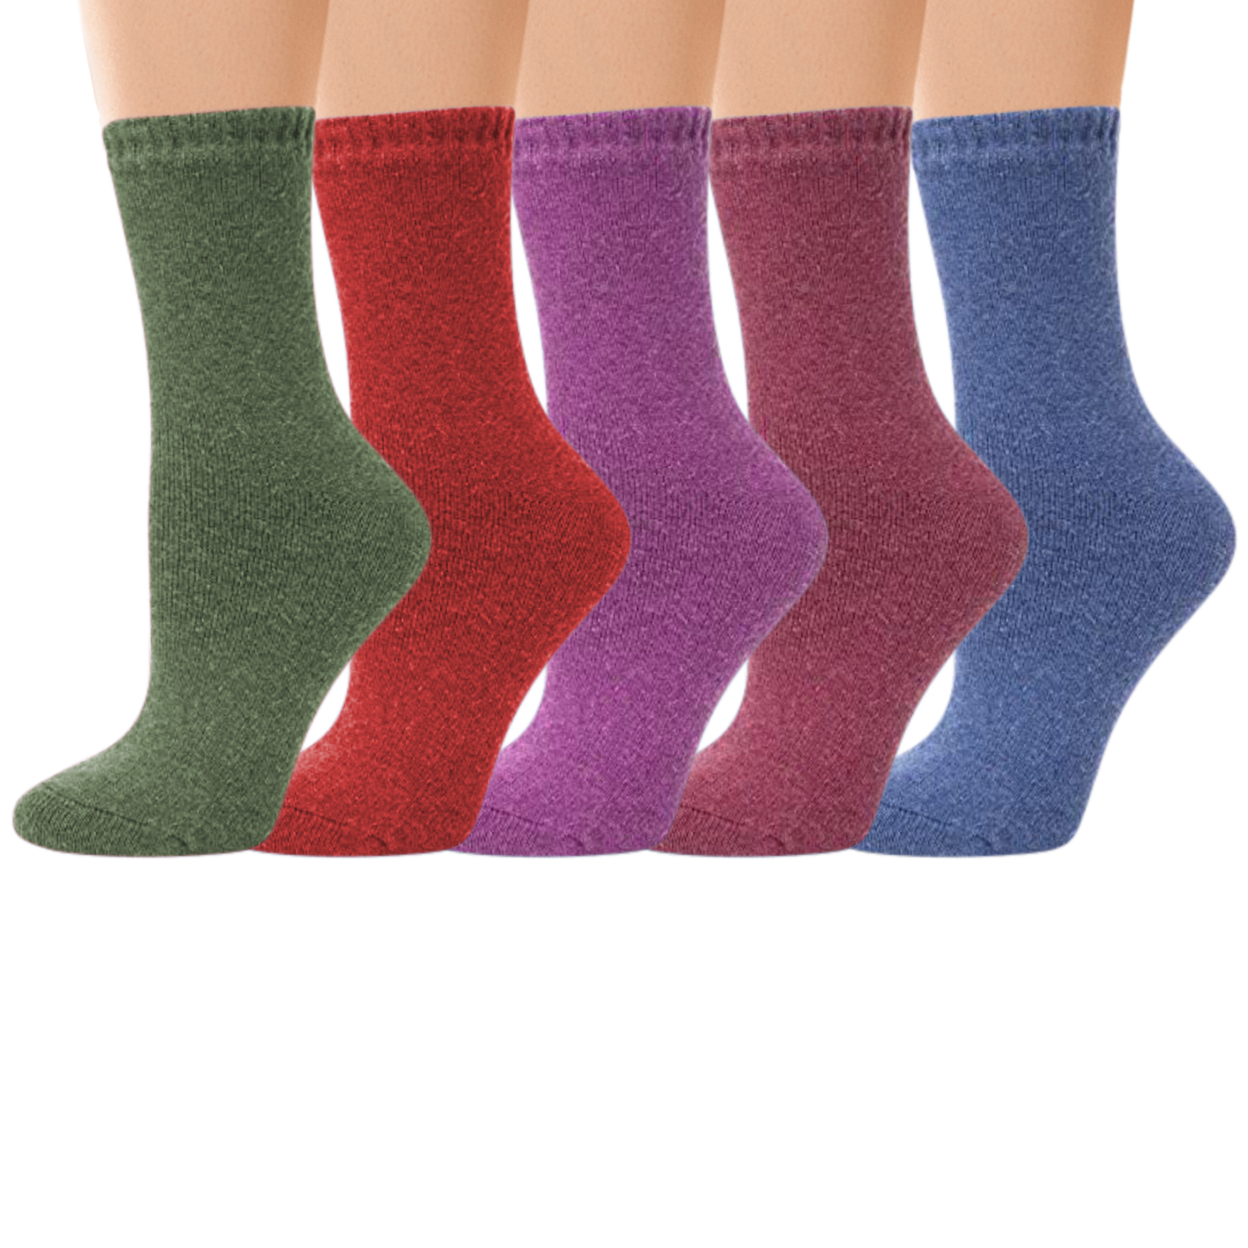 3-Pairs: Women's Warm Thick Soft Merino Lamb Wool Winter Thermal Socks